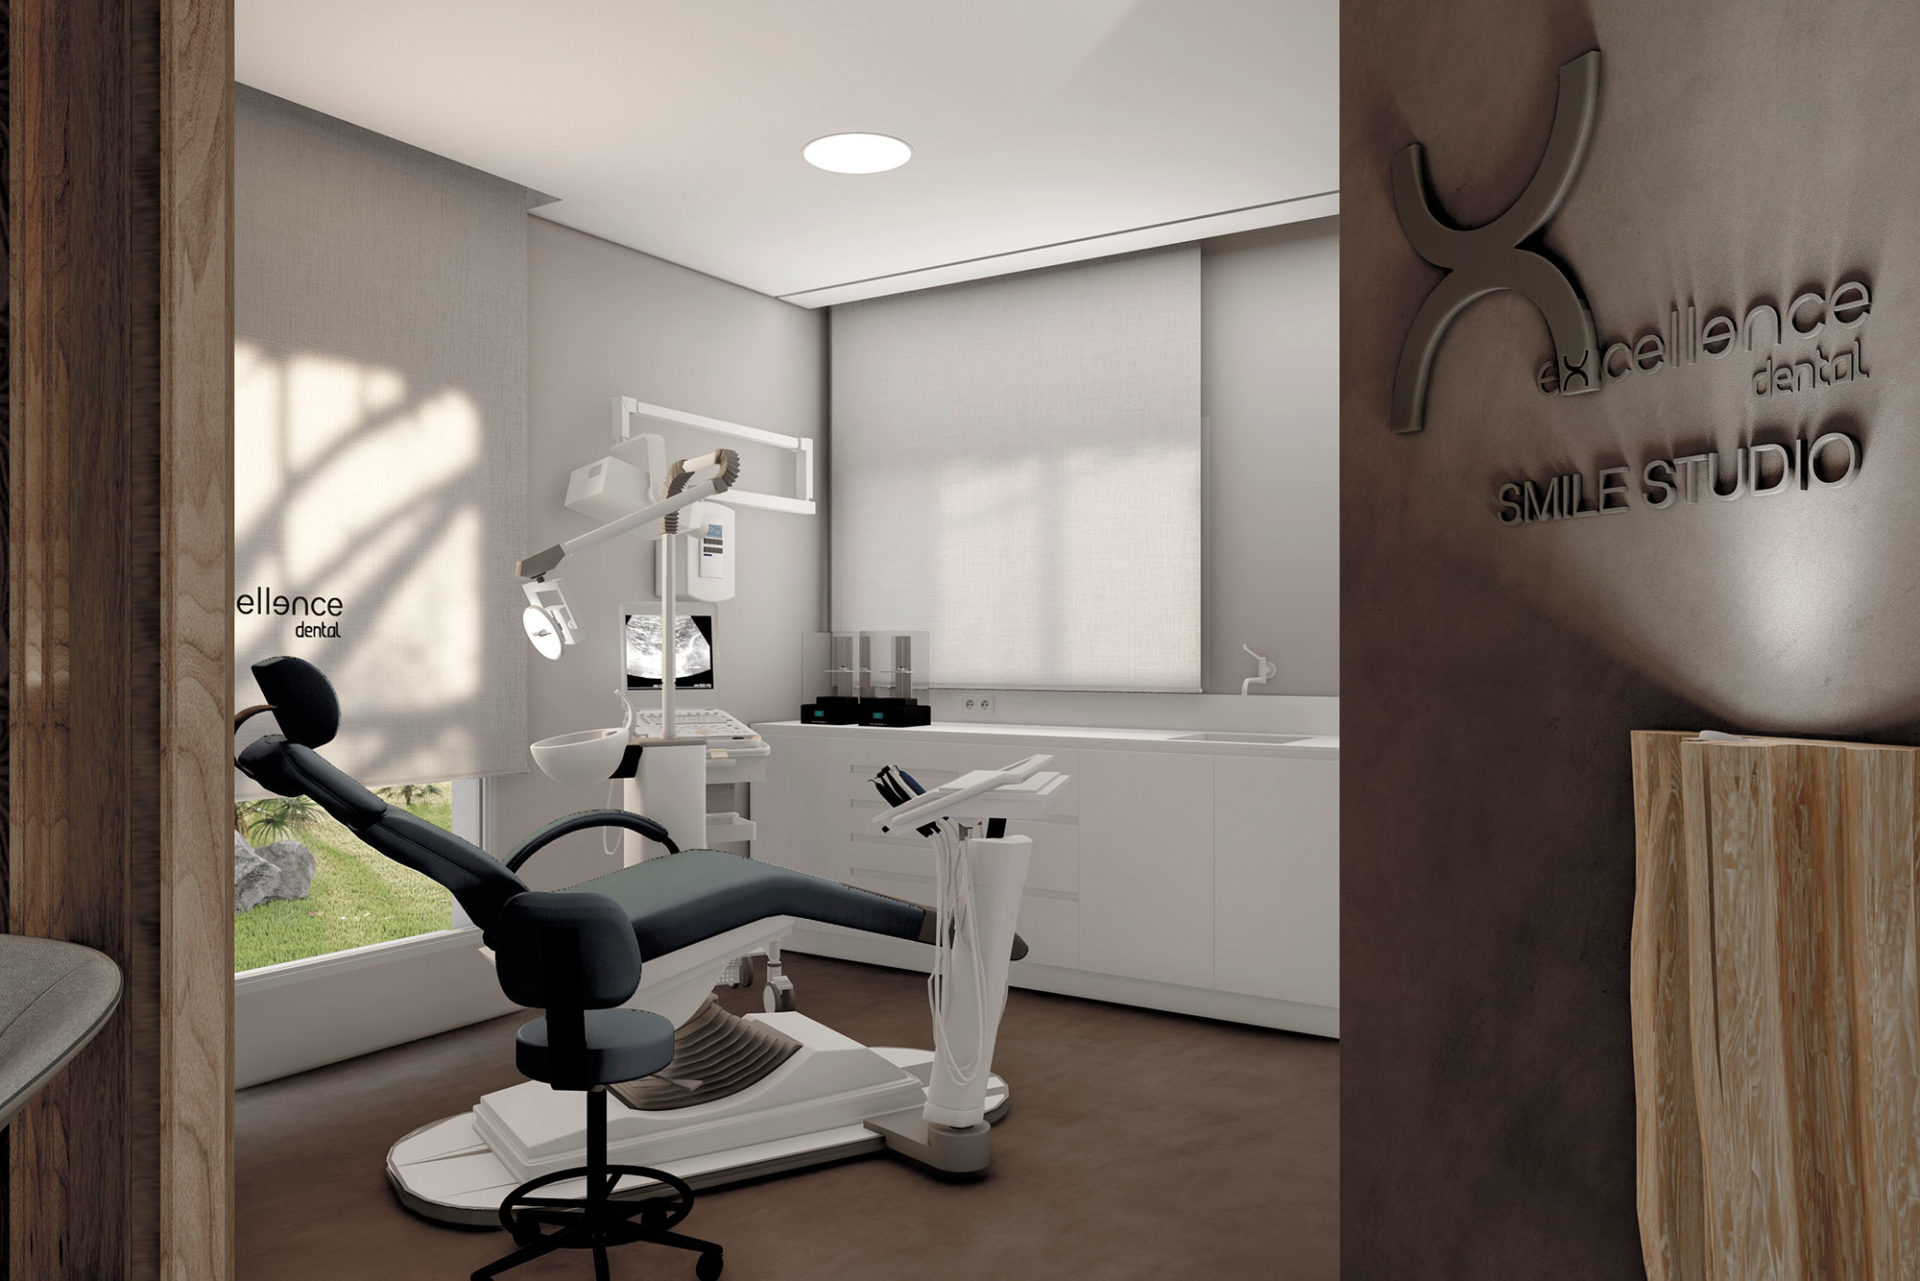 interiorismo comercial area diseño natural aplusdn clinica dental mallorca box con detalle corporativo en pared